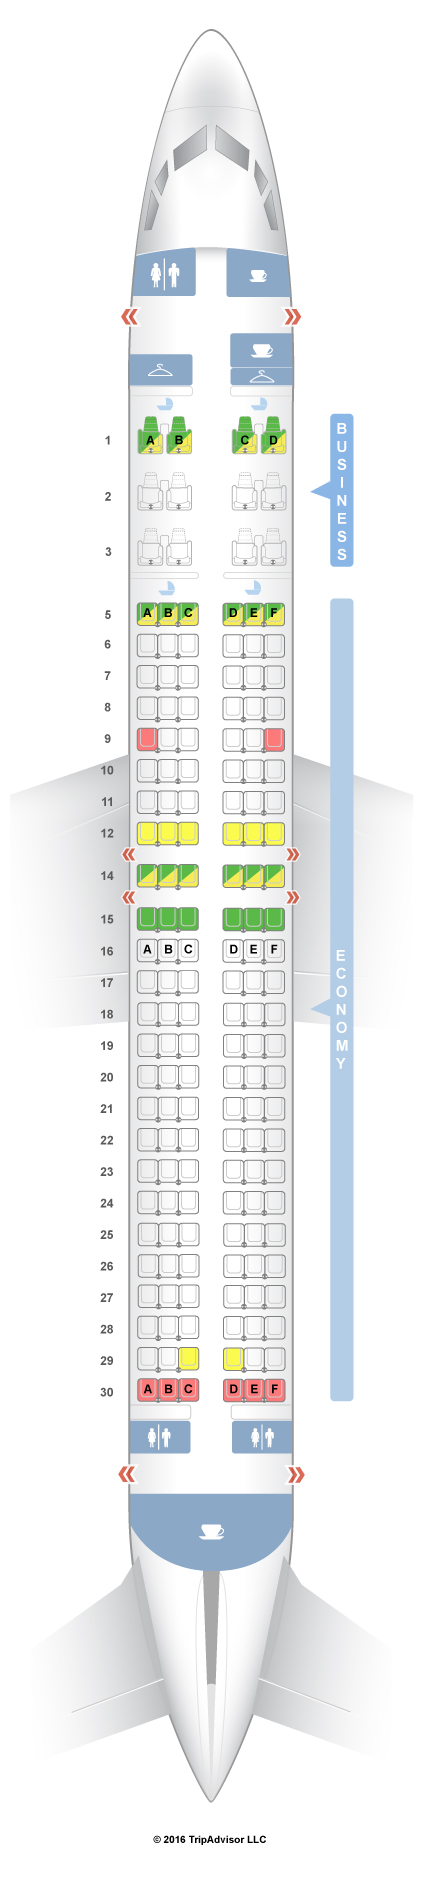 boeing 737 800 seat map Seatguru Seat Map Silkair Seatguru boeing 737 800 seat map